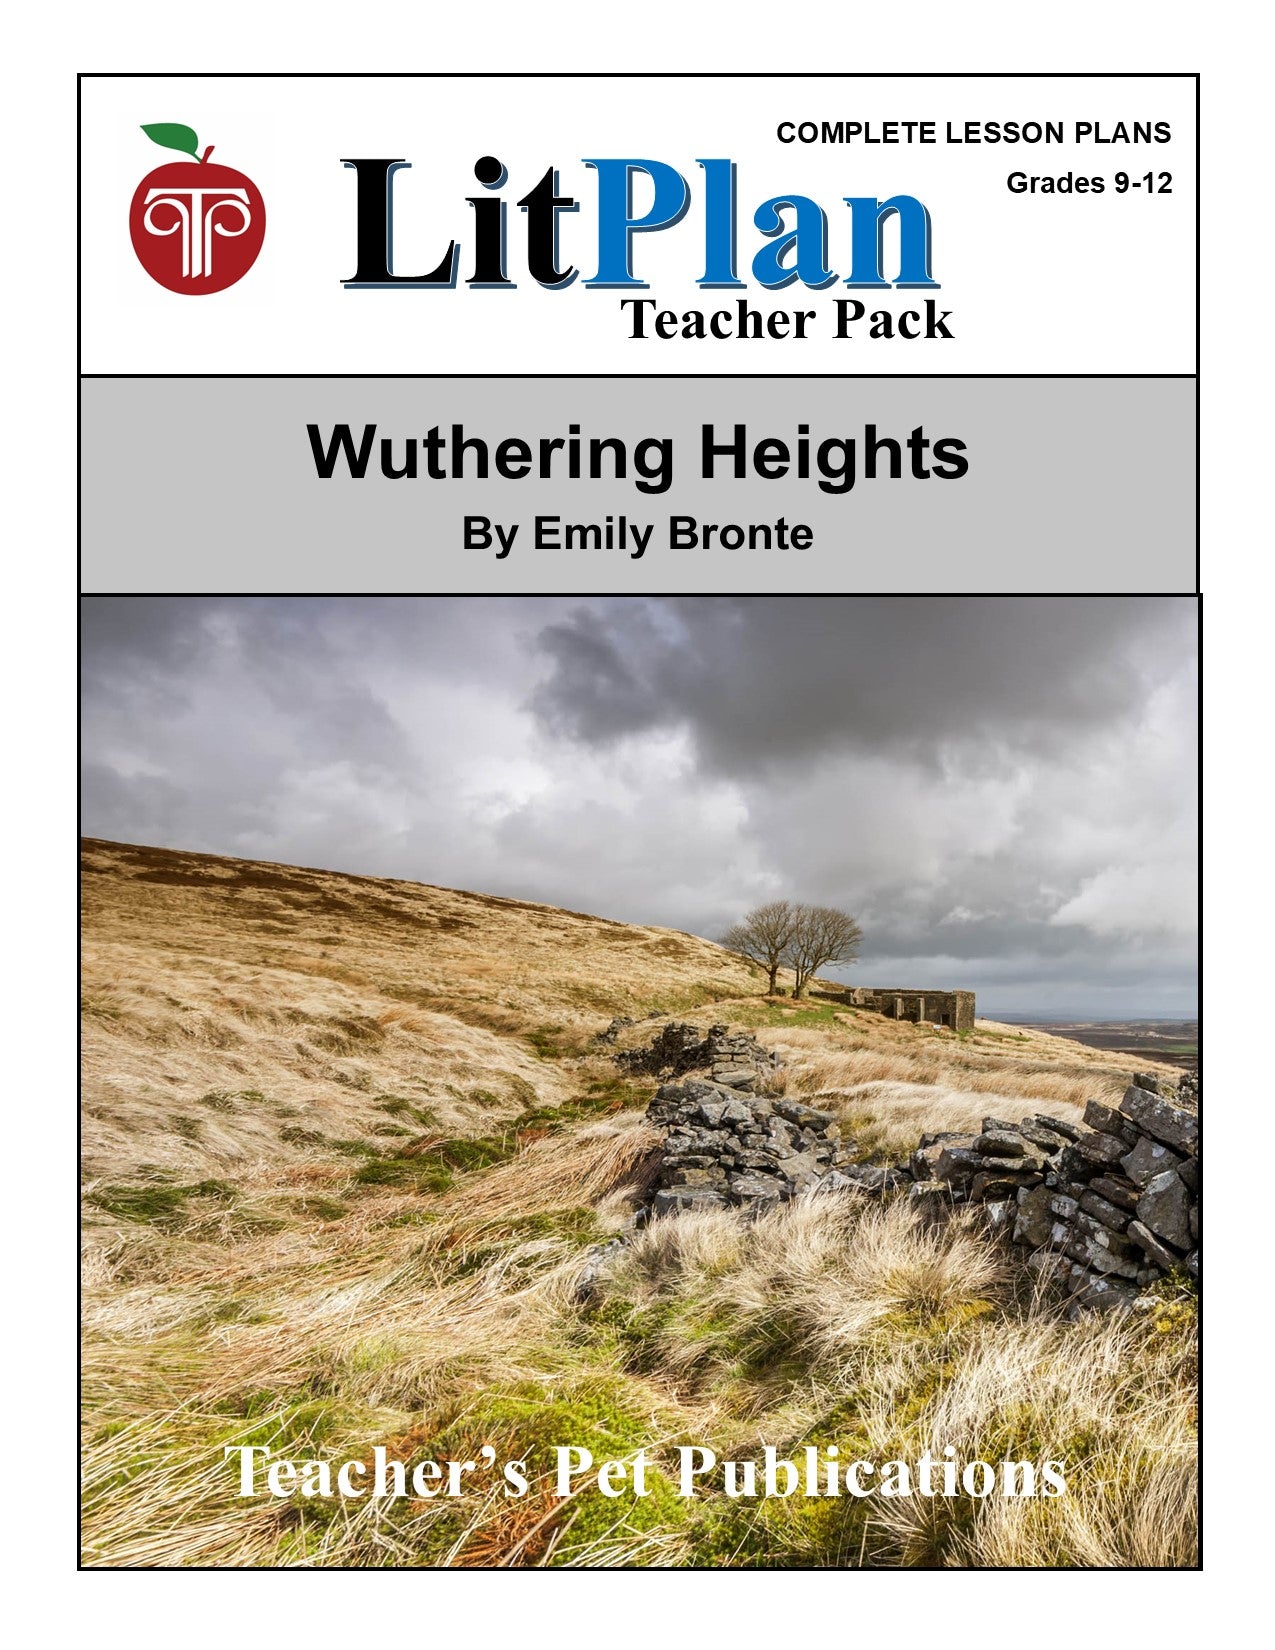 Wuthering Heights: LitPlan Teacher Pack Grades 9-12